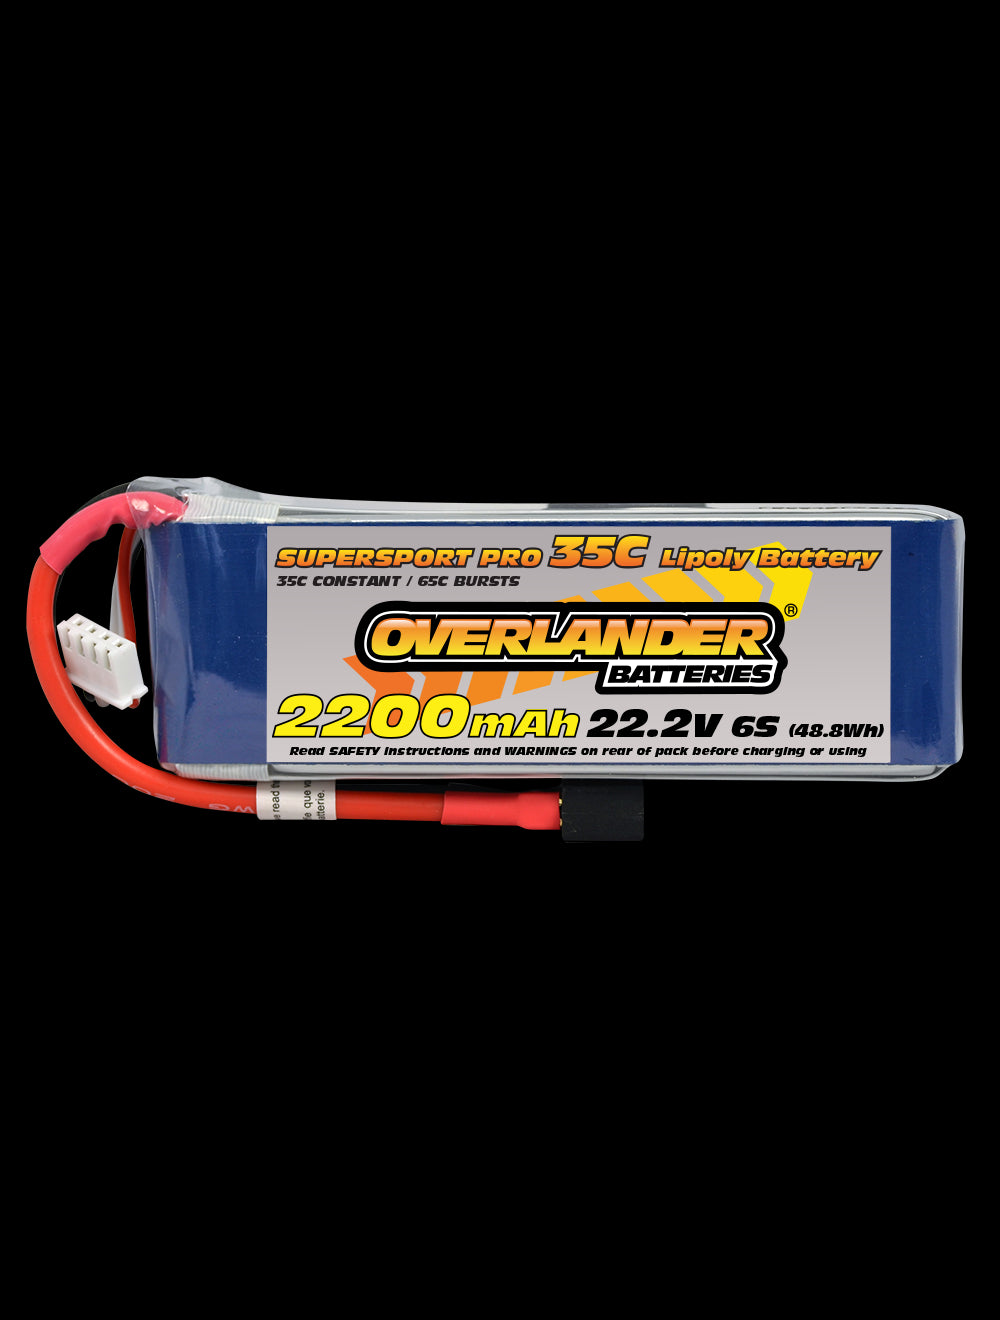 Overlander 2200mAh 22.2V 6S 35C Supersport Pro LiPo Battery - XT60 Connector 2895